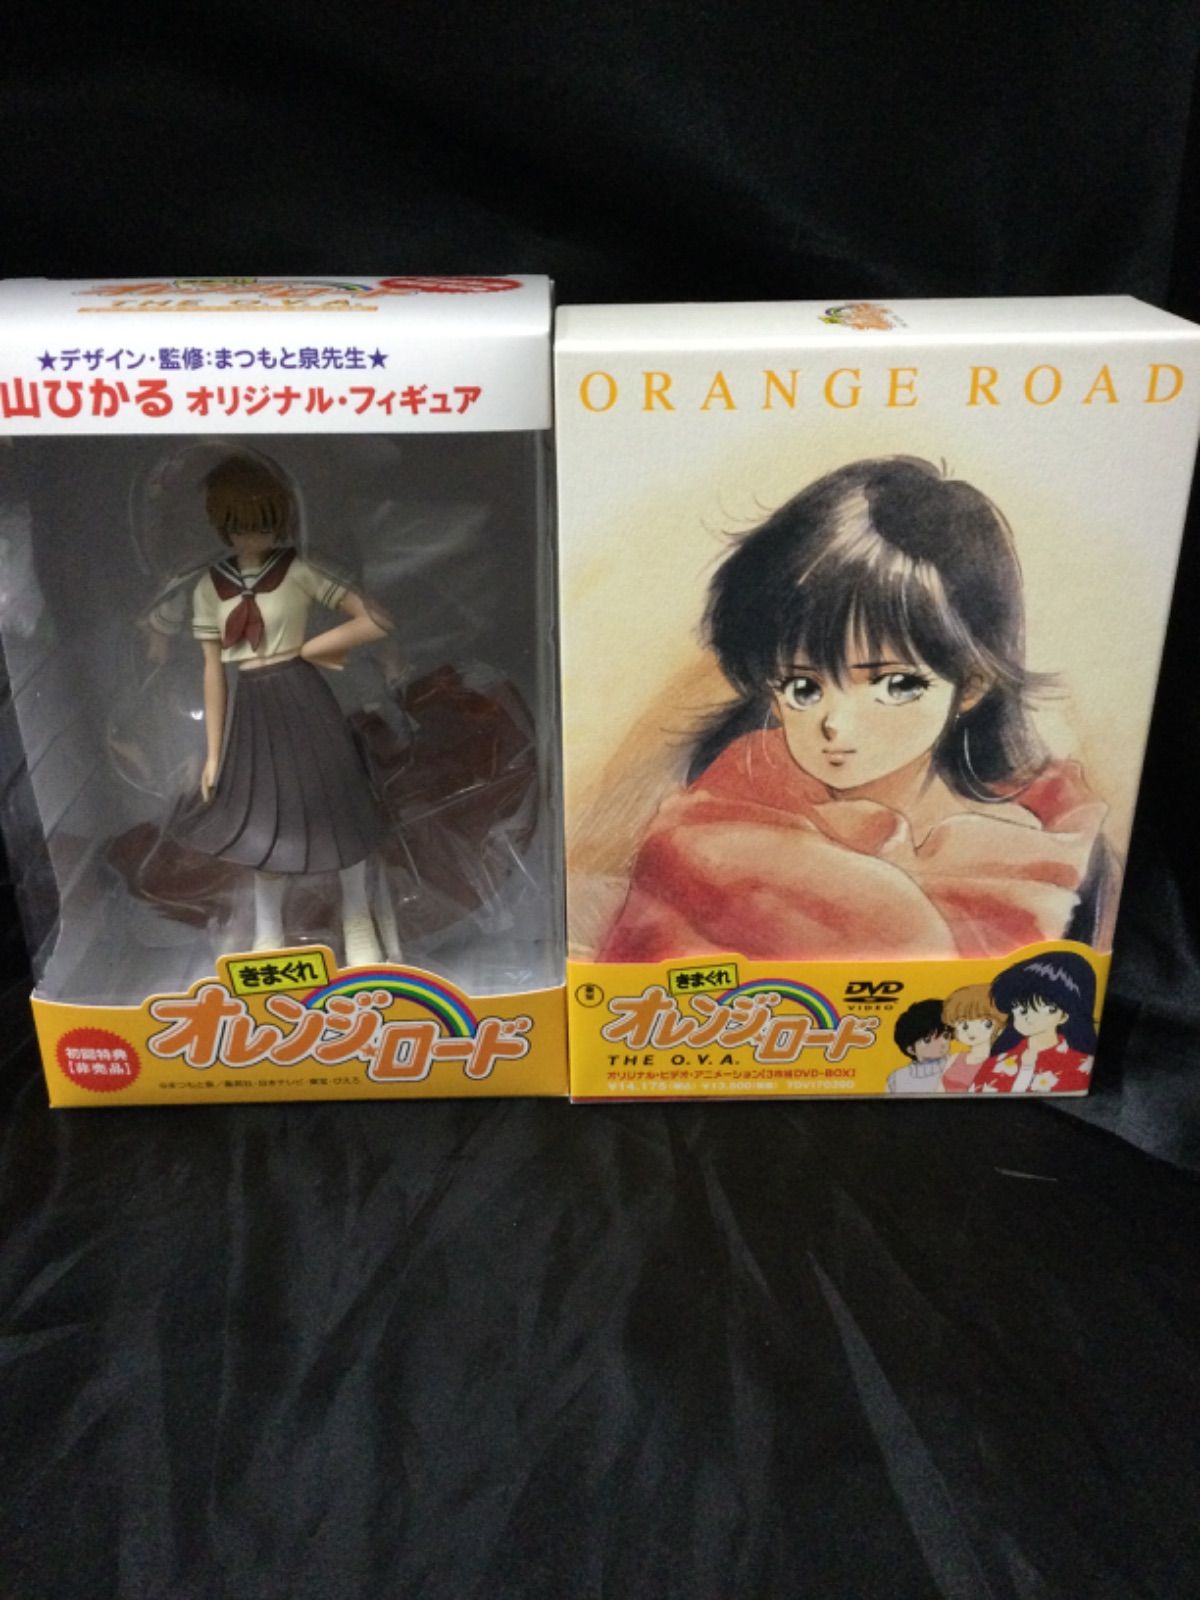 きまぐれオレンジ☆ロード DVD+全巻収納BOX+フィギュア - アニメ